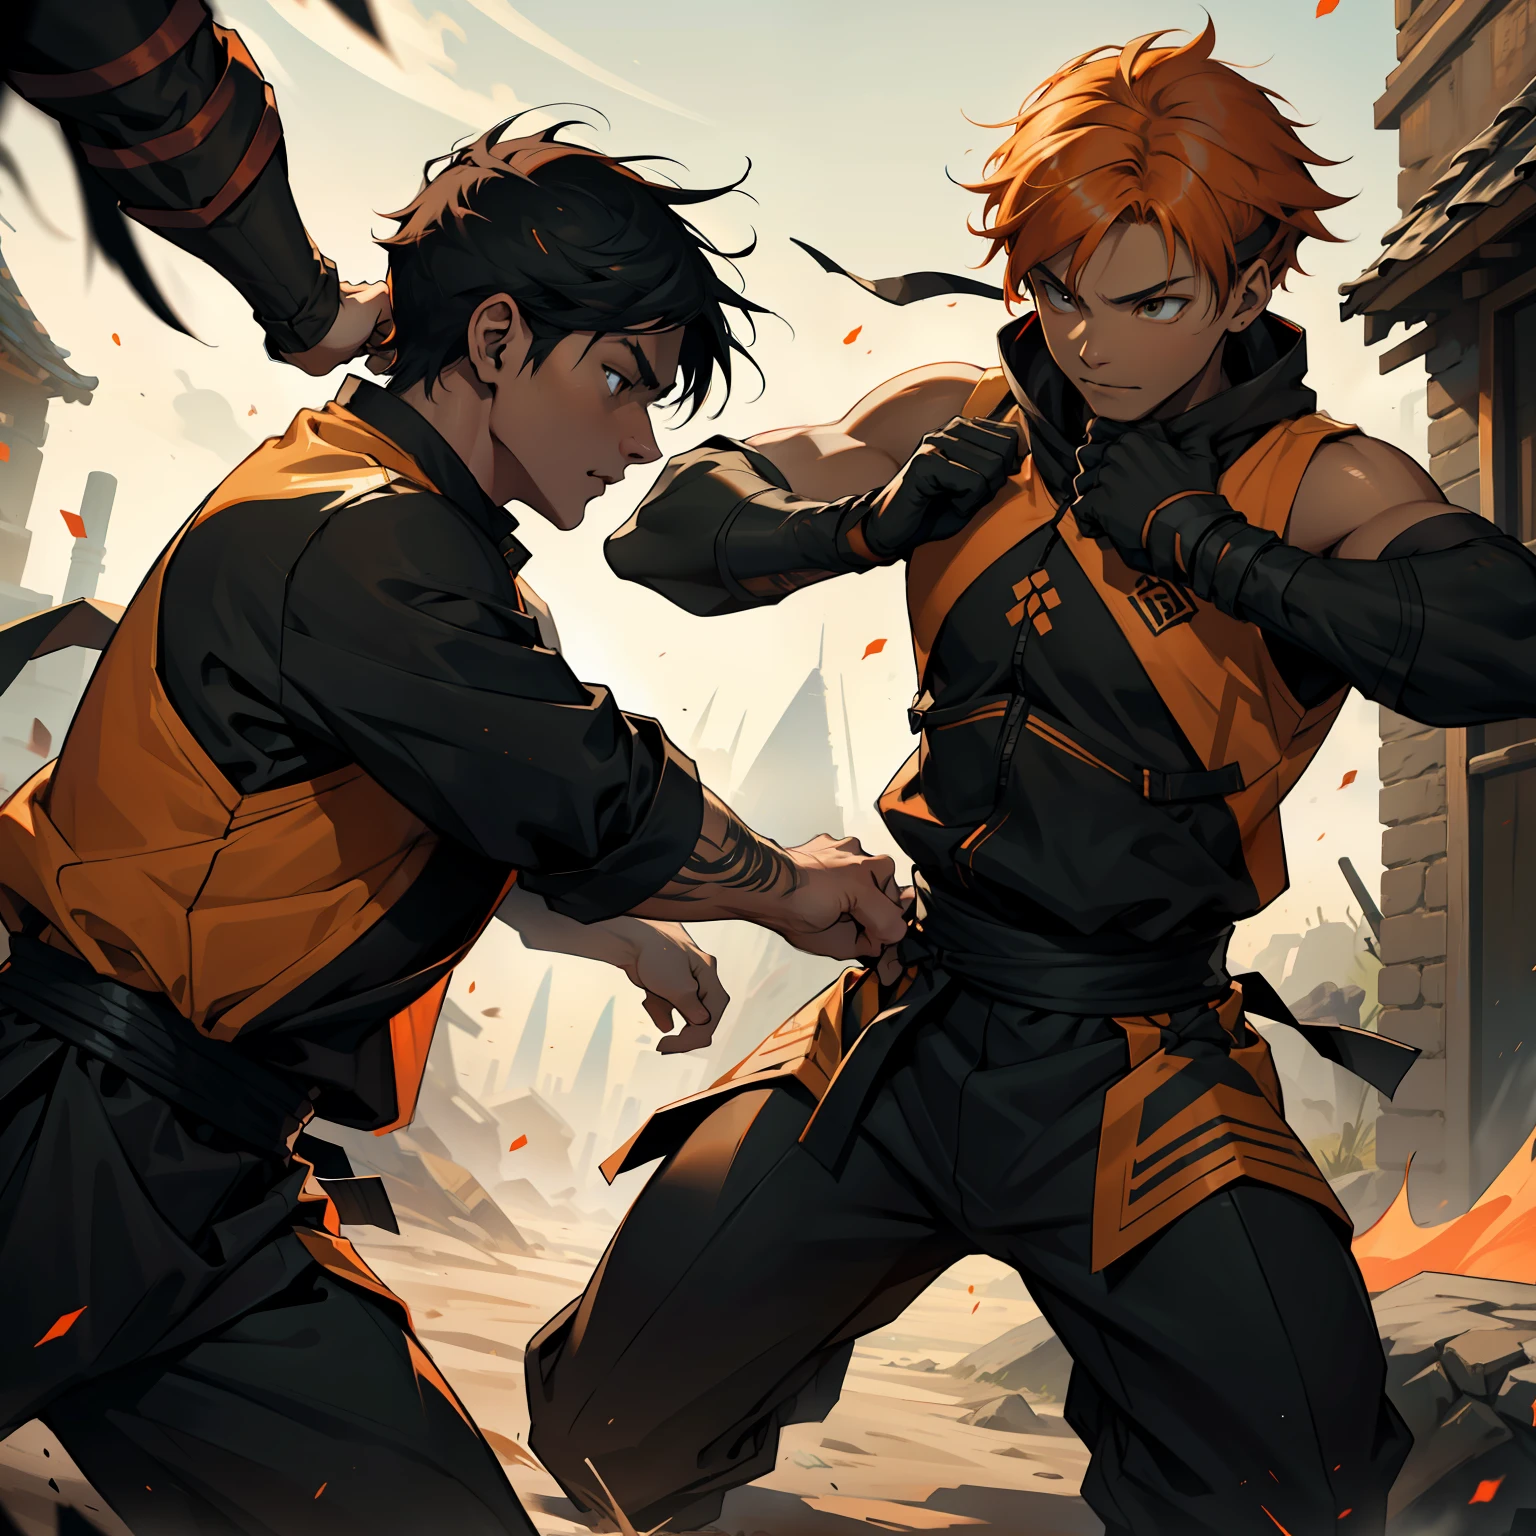 주변에서 오렌지색과 검은색의 로르 에너지가 솟아오른다 주황색 머리의 15세 닌자 두 명과 검은 머리의 한 명 사이의 전투 장면